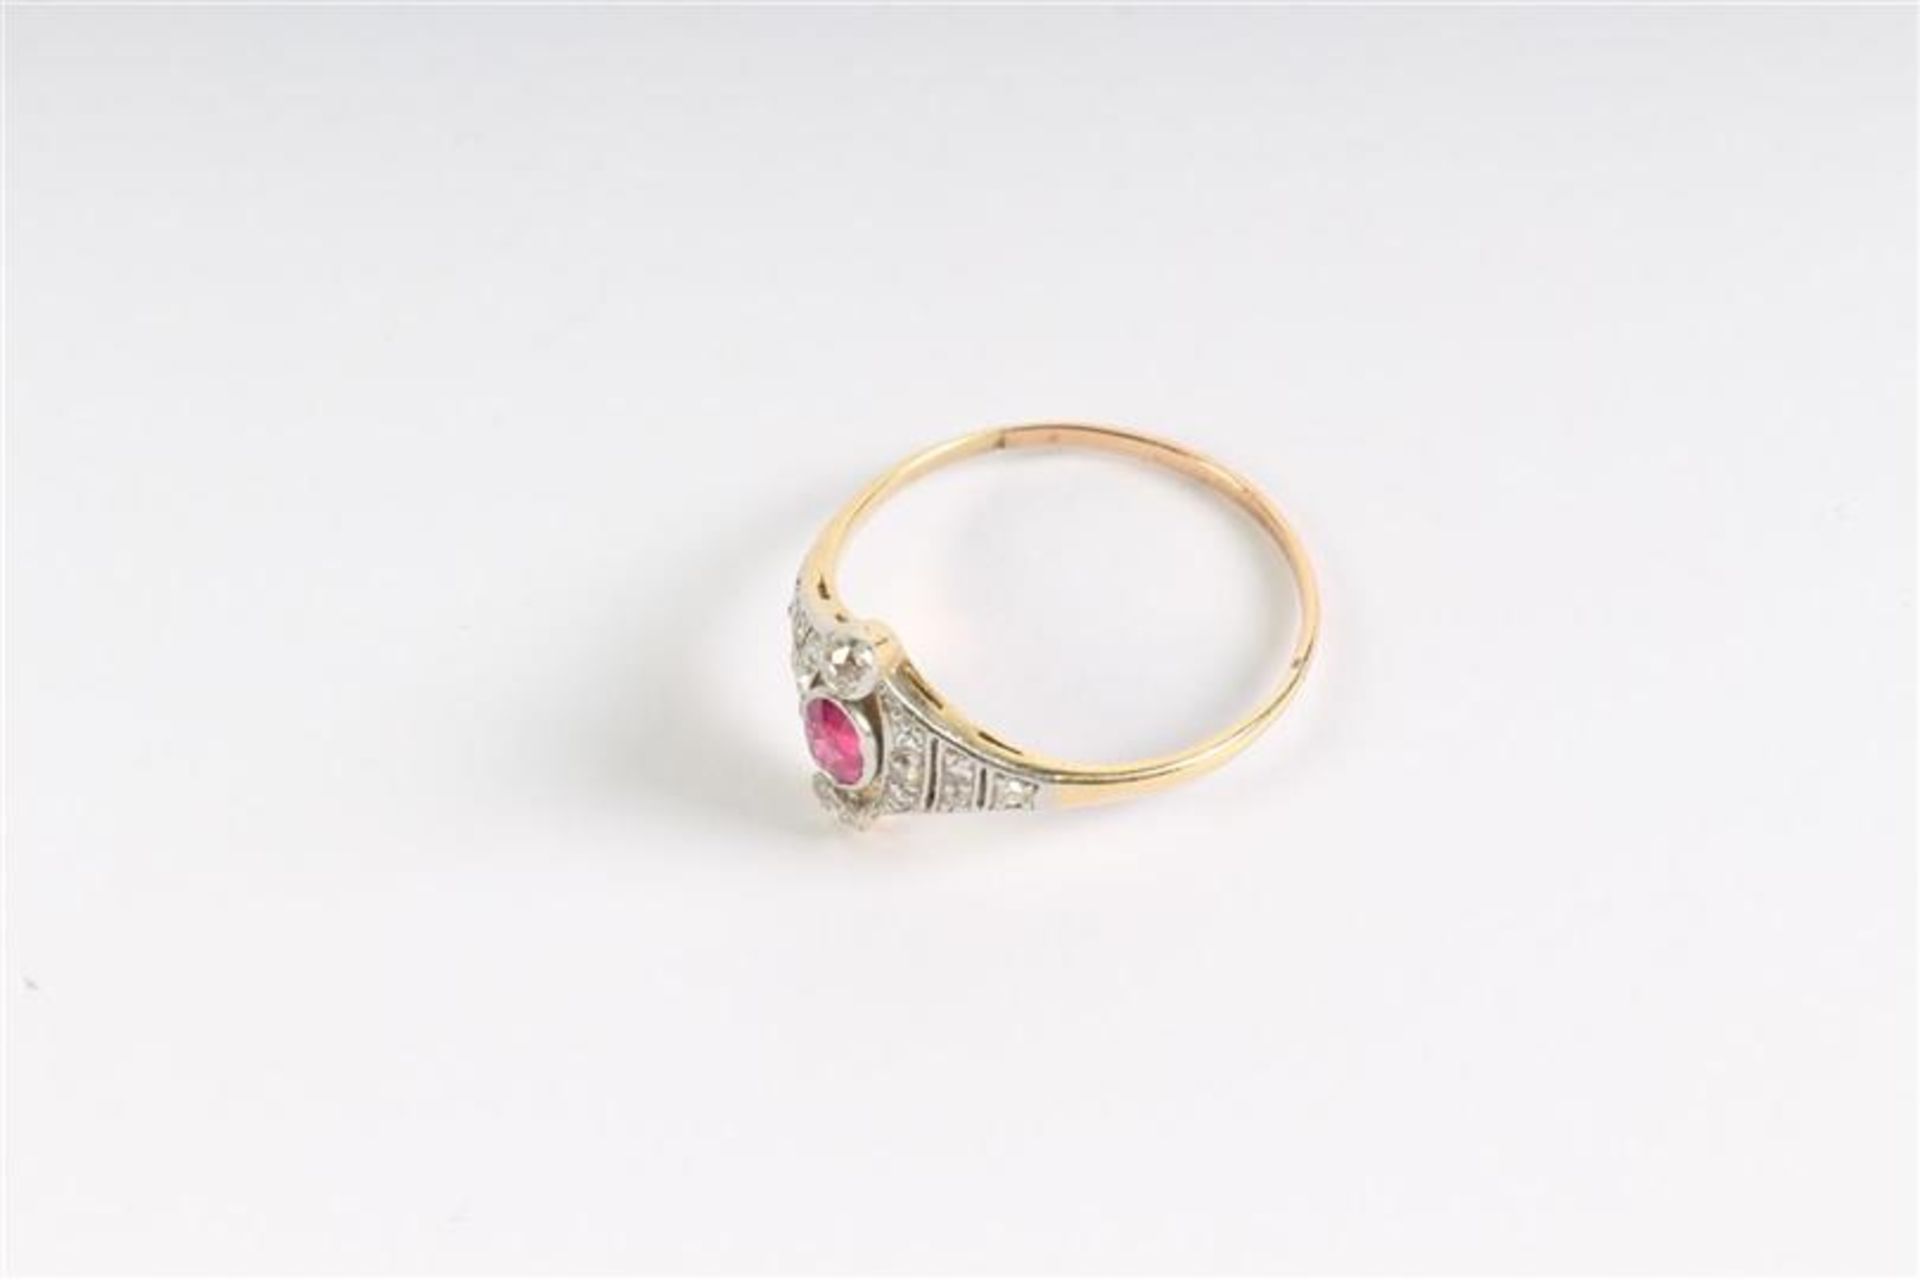 Gouden ring met diamant en robijn. Gewicht: 2.2 g. Ringmaat: 19.25. - Bild 4 aus 4